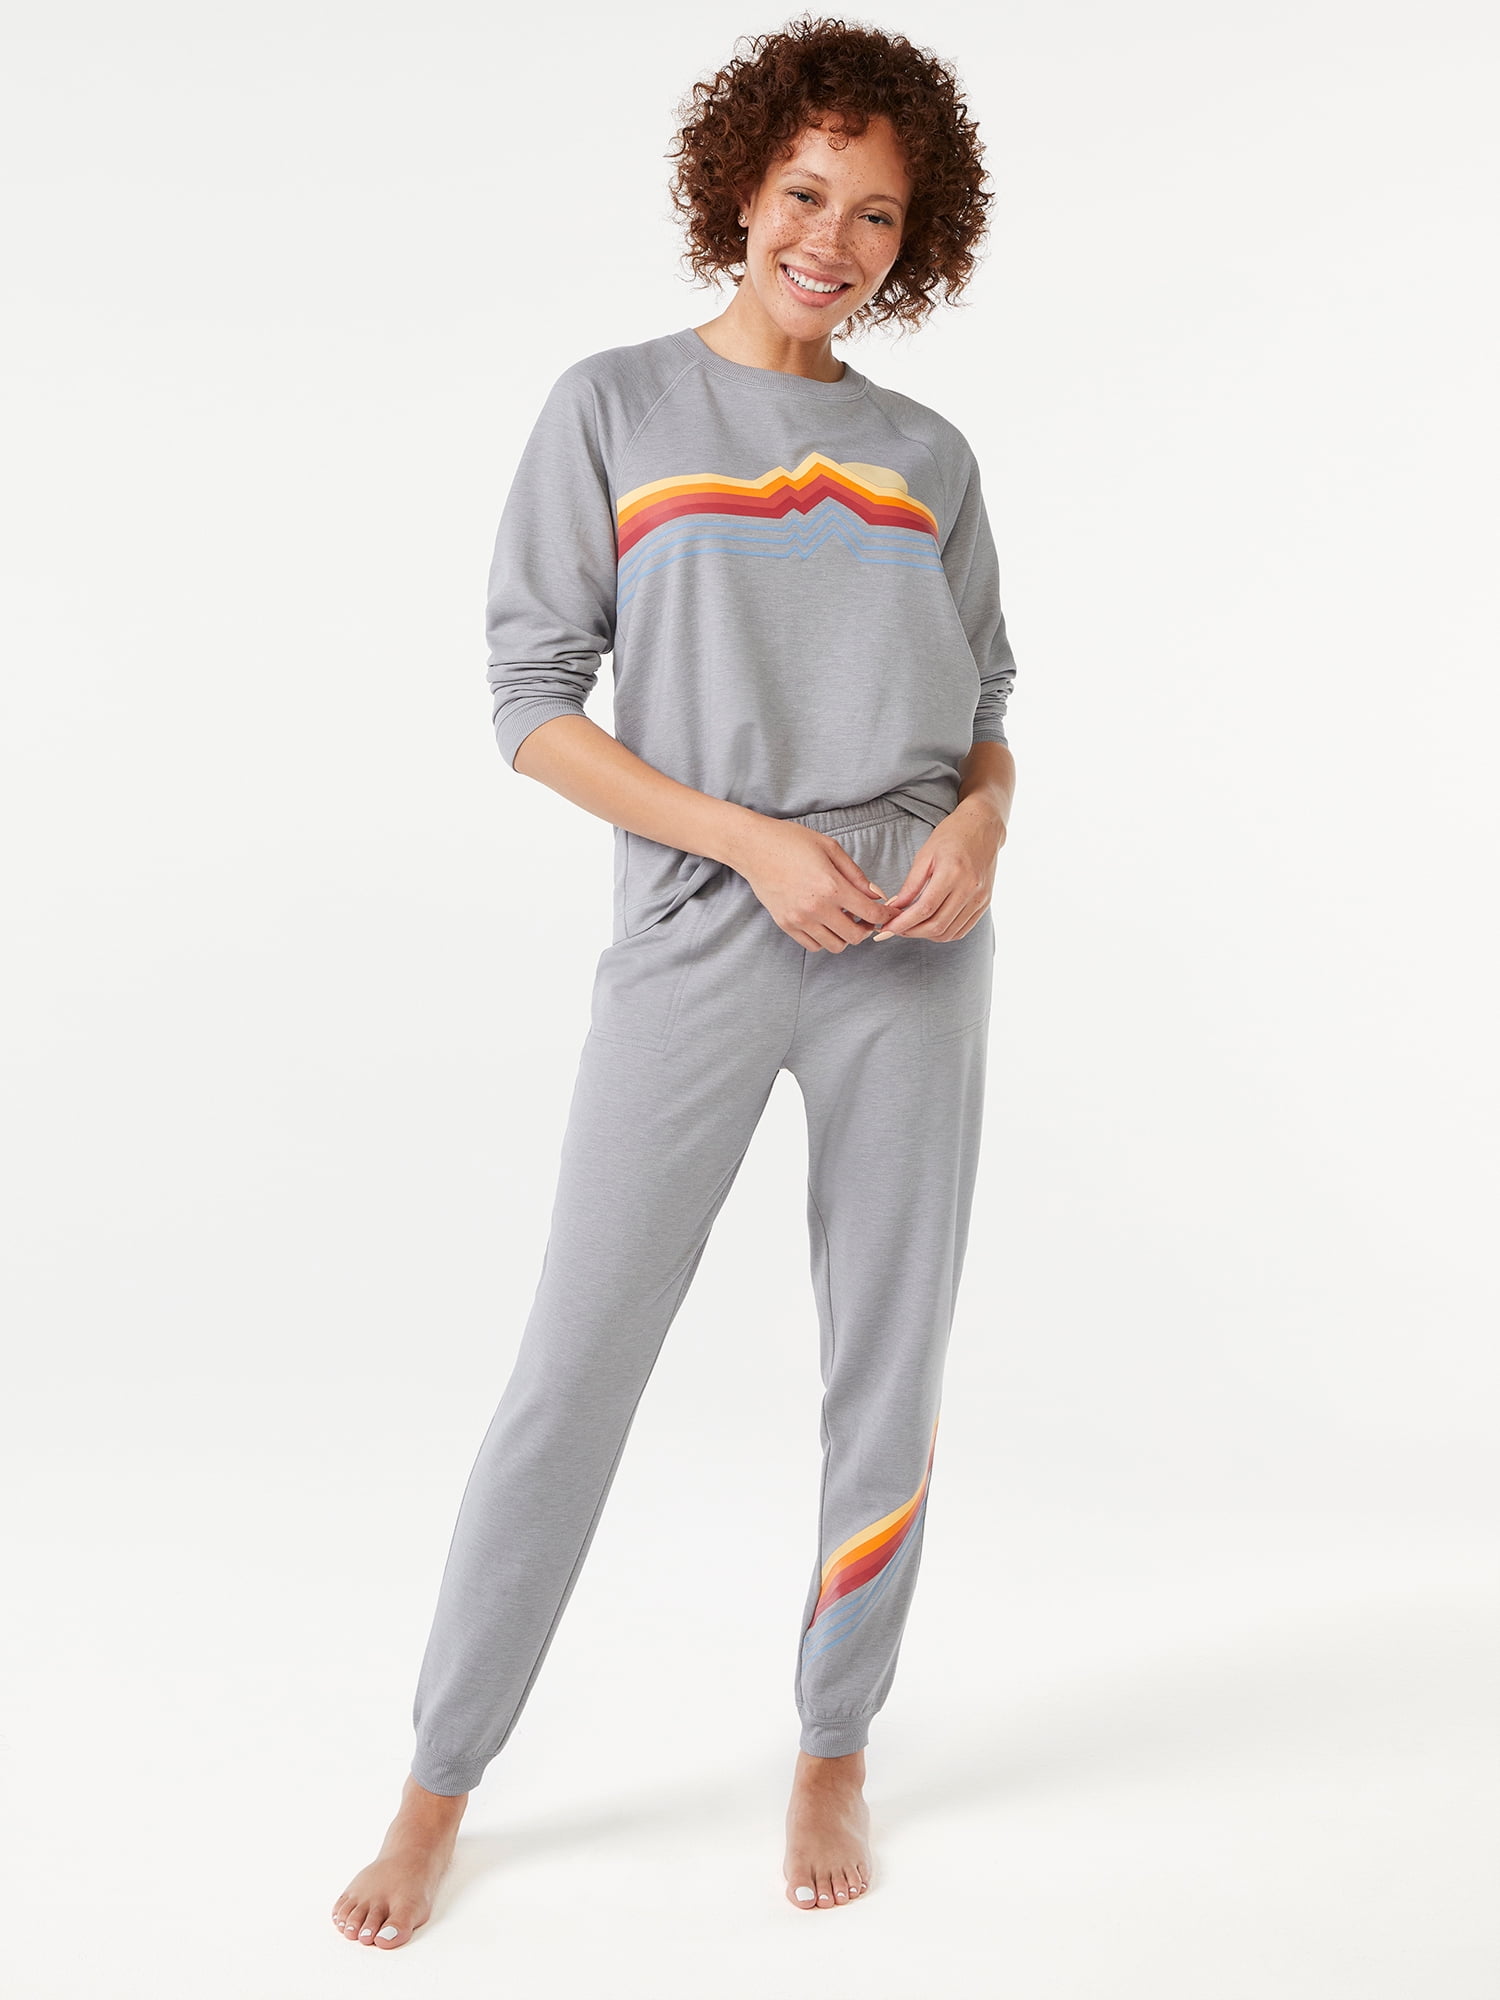 Joyspun Women's French Terry Holiday Pajama Gift Set, 2-Piece, Sizes S to 3X